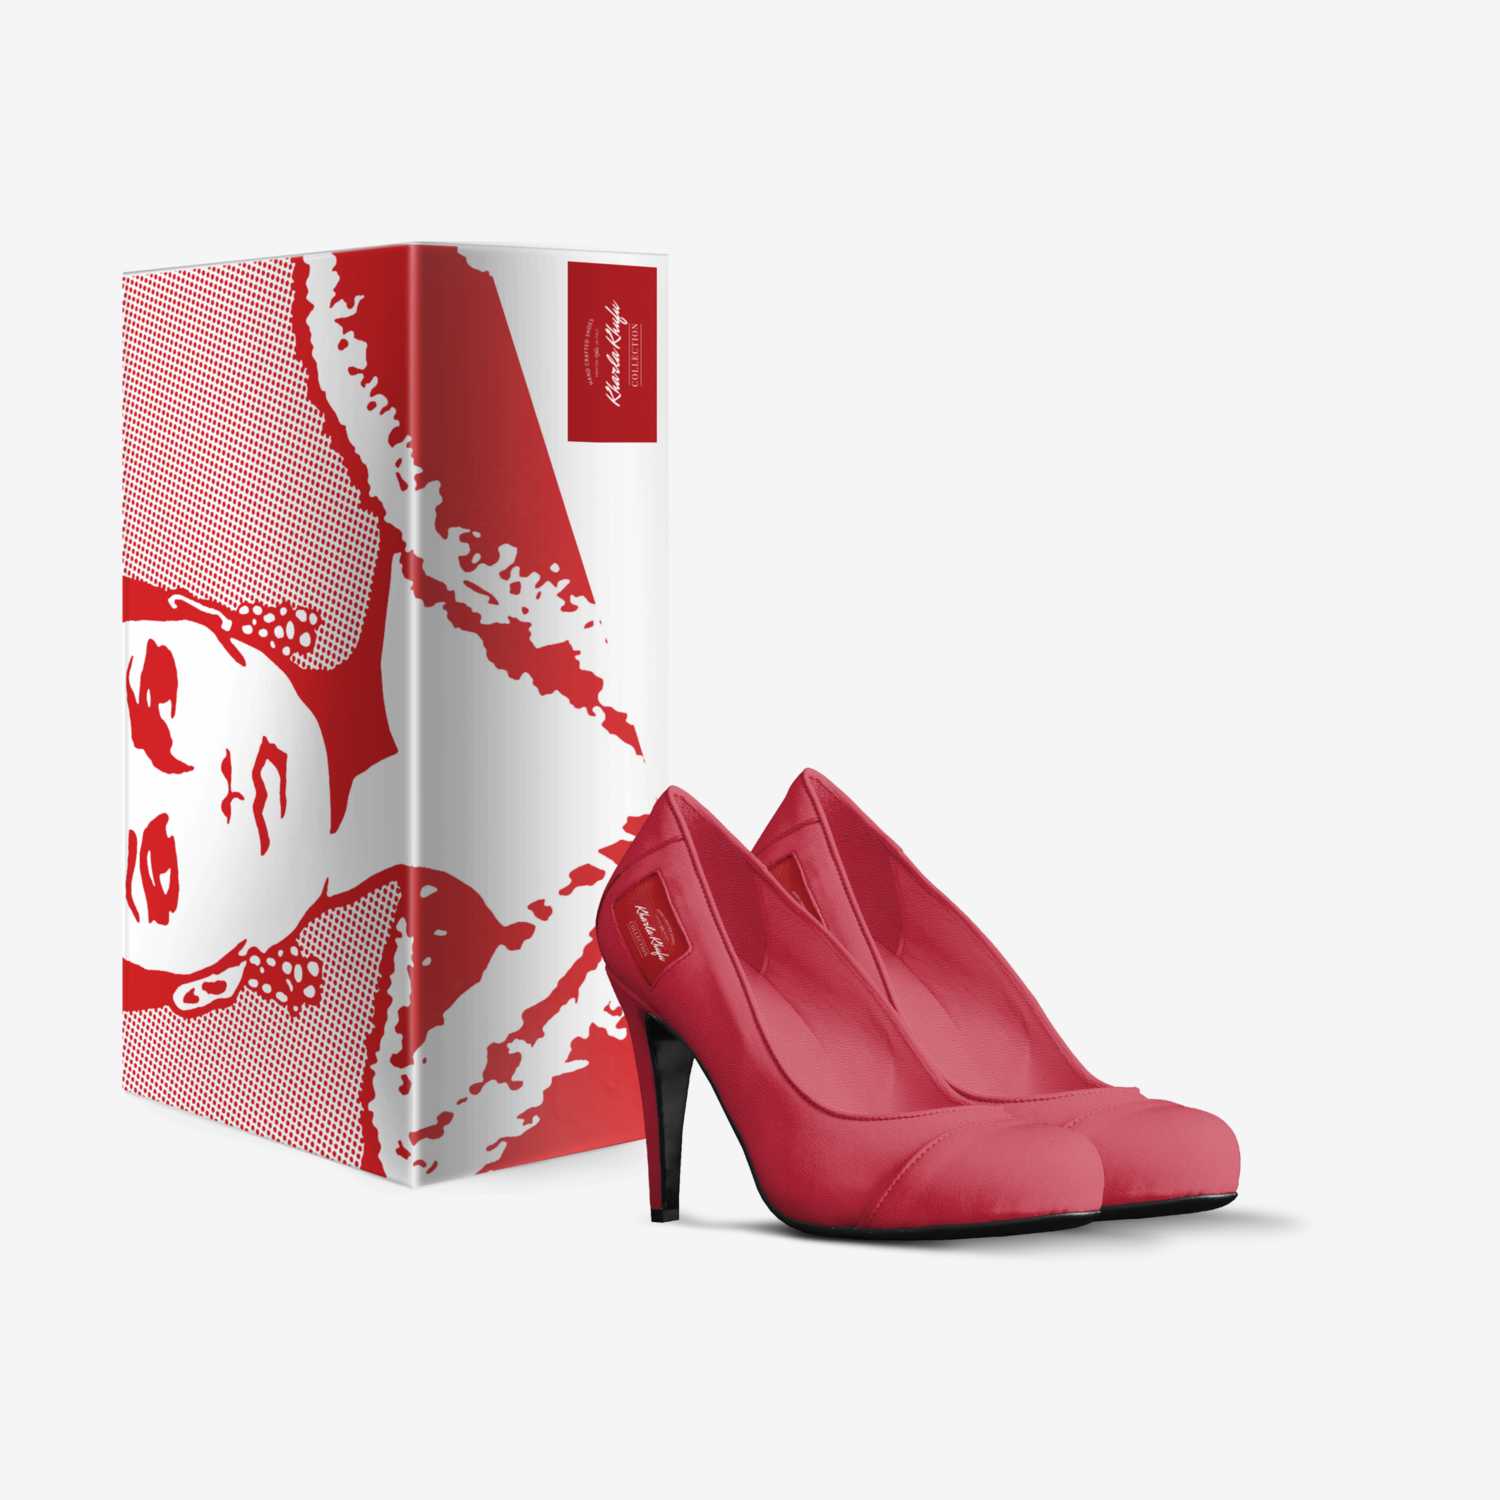 Kharla Khufu  custom made in Italy shoes by Sebren Khufu | Box view